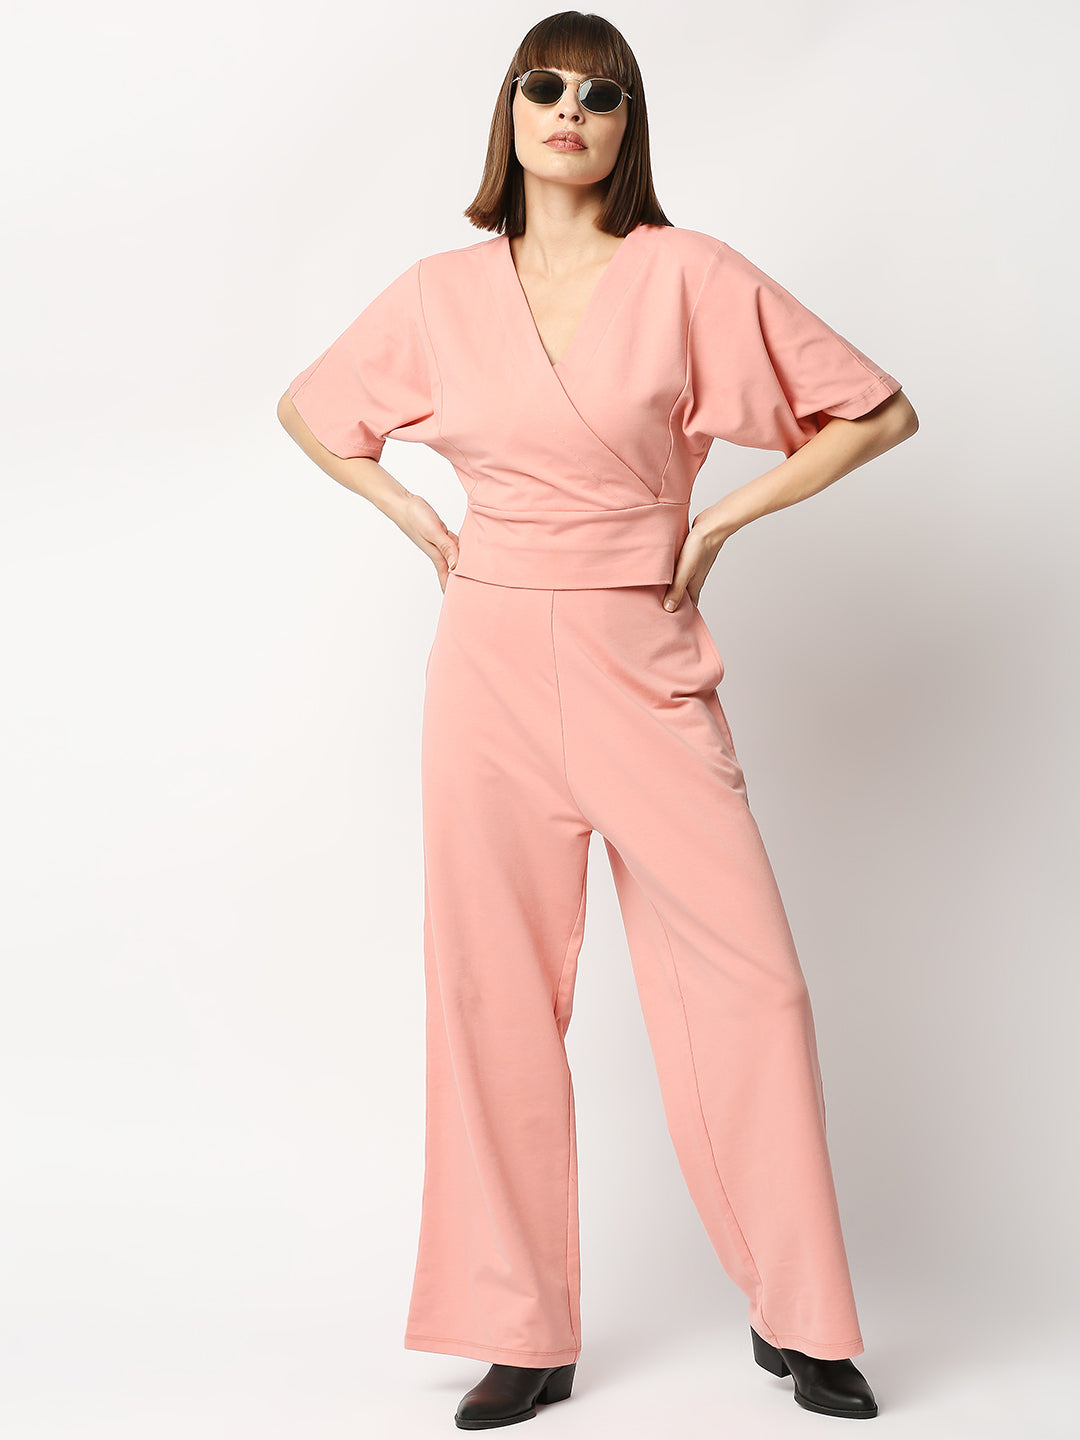 Buy Blamblack Powder Pink Women's Half Sleeves Co-ords Set